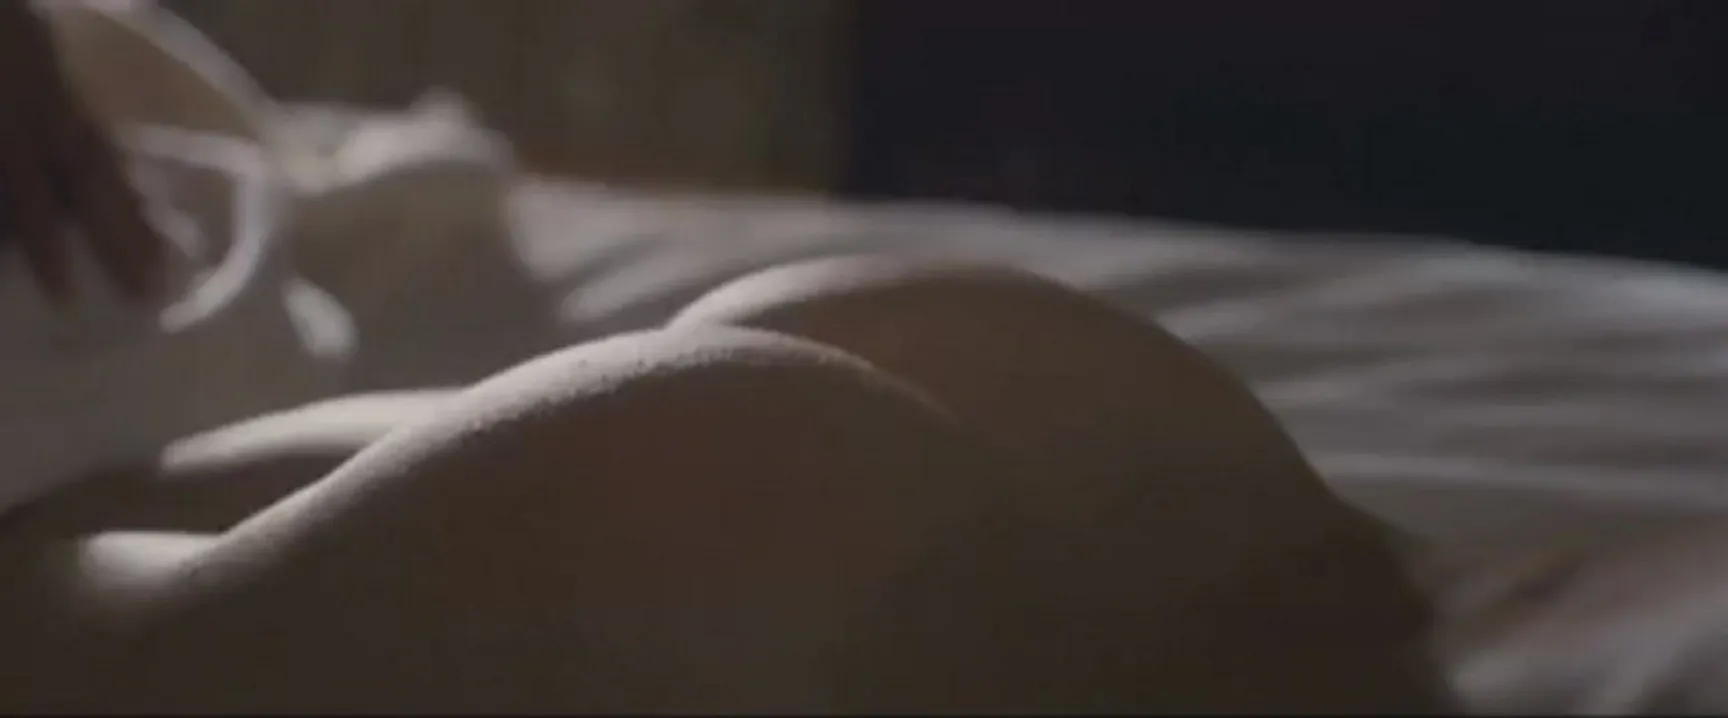 Kate Hudson’s forgotten “ass spank” plot in The Killer Inside Me2010